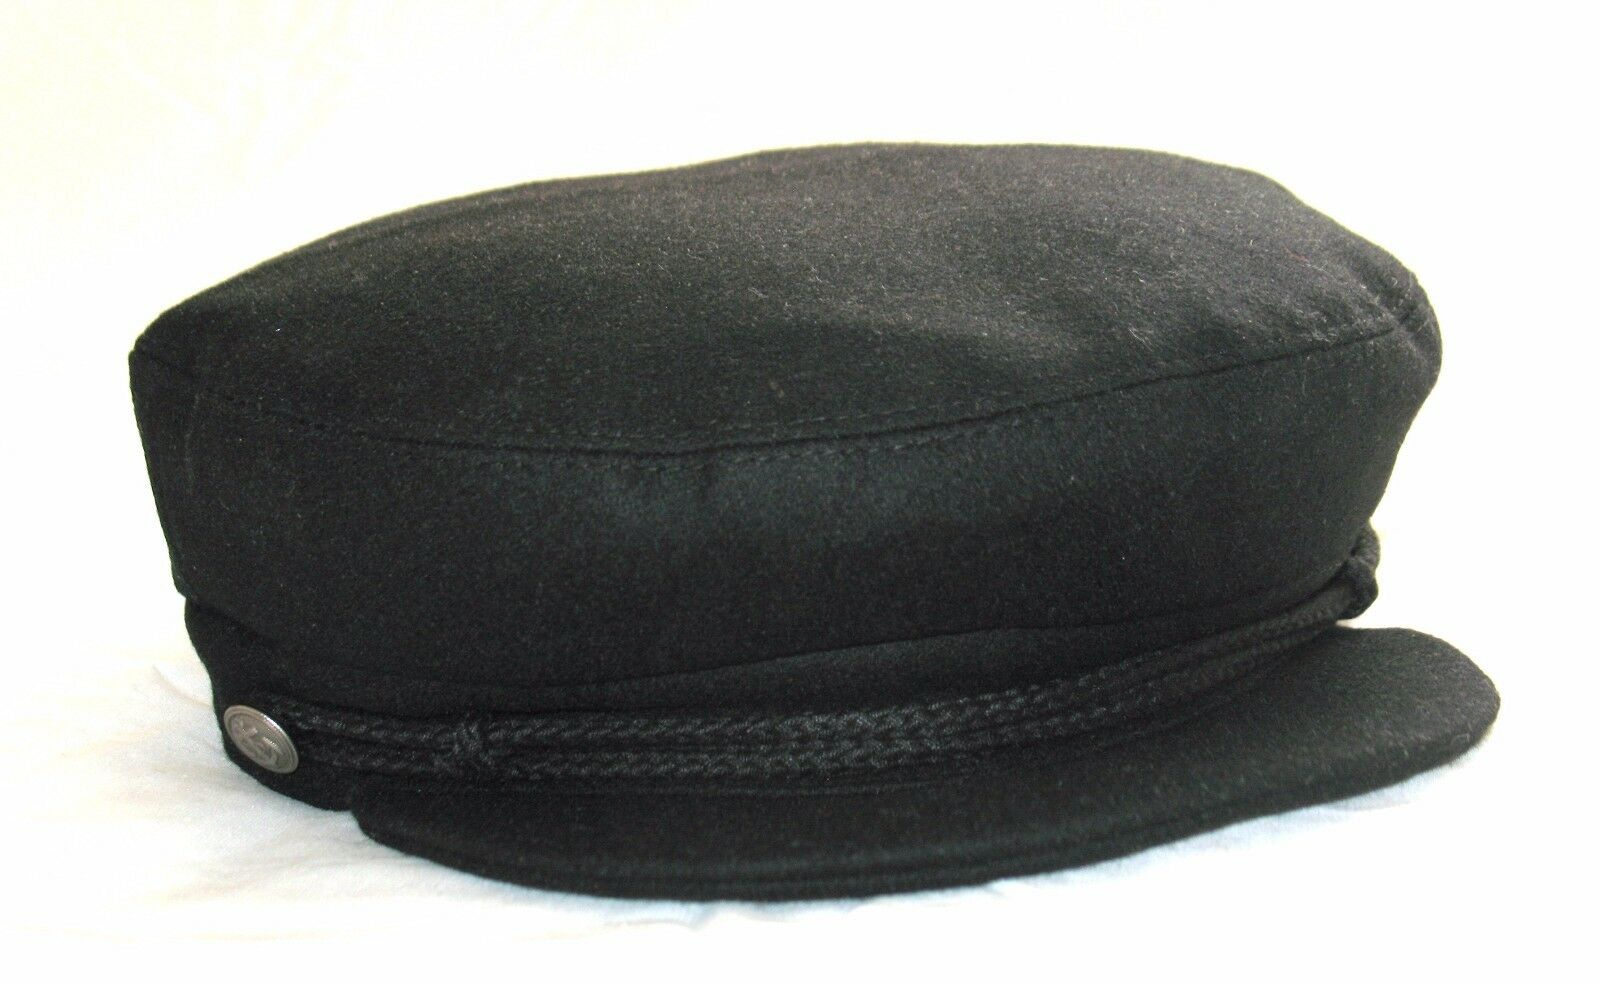 SALE Fiddler Captain Cap 1960s Vintage Style Hat Wool by G&H Hats Black 